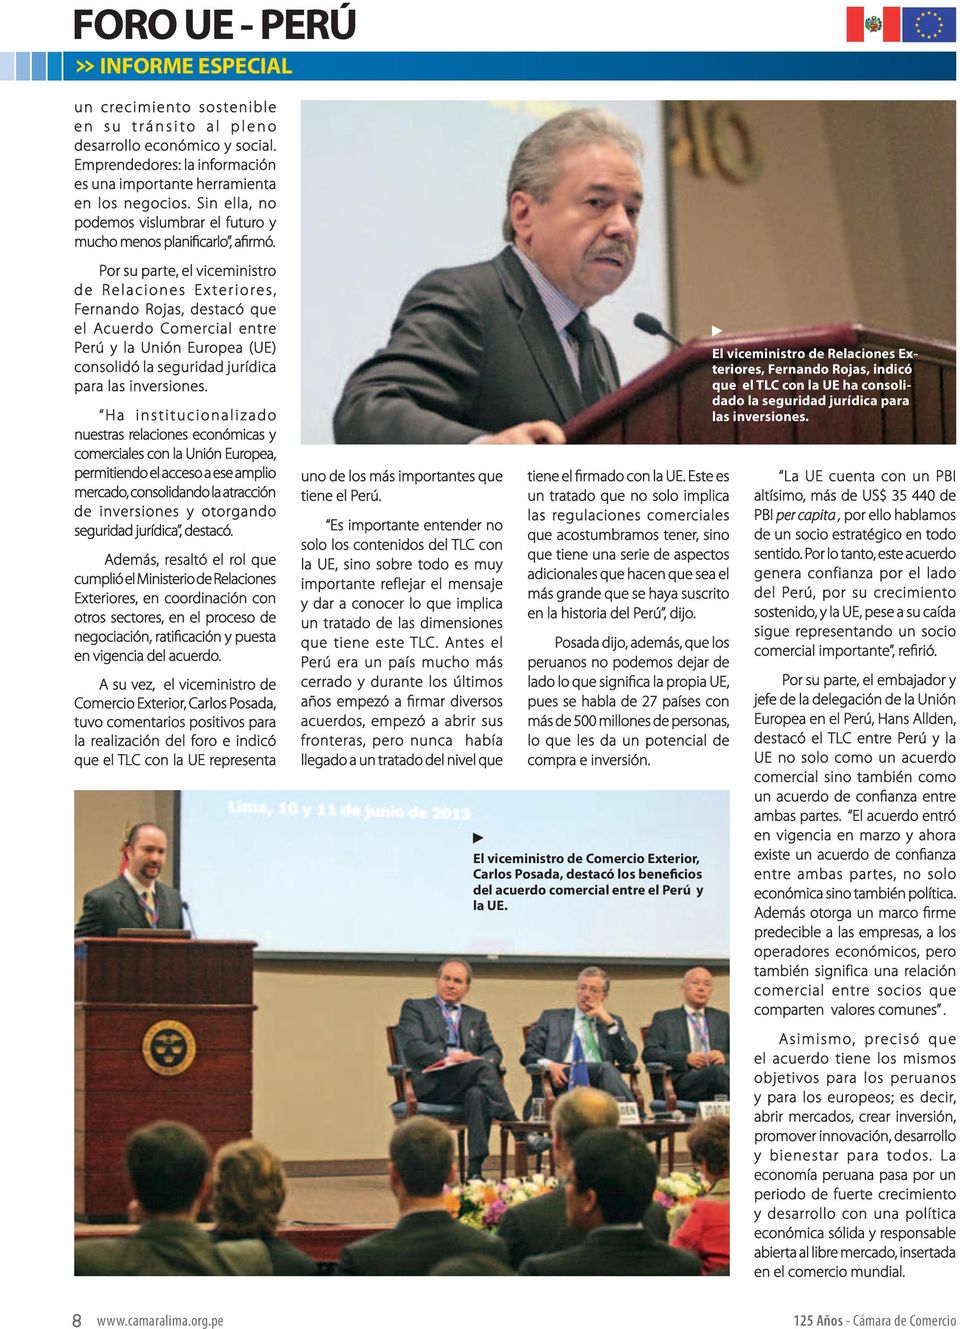 Por su parte, el viceministro de Relaciones Exteriores, Fernando Rojas, destacó que el Acuerdo Comercial entre Perú y la Unión Europea (UE) consolidó la seguridad jurídica para las inversiones.